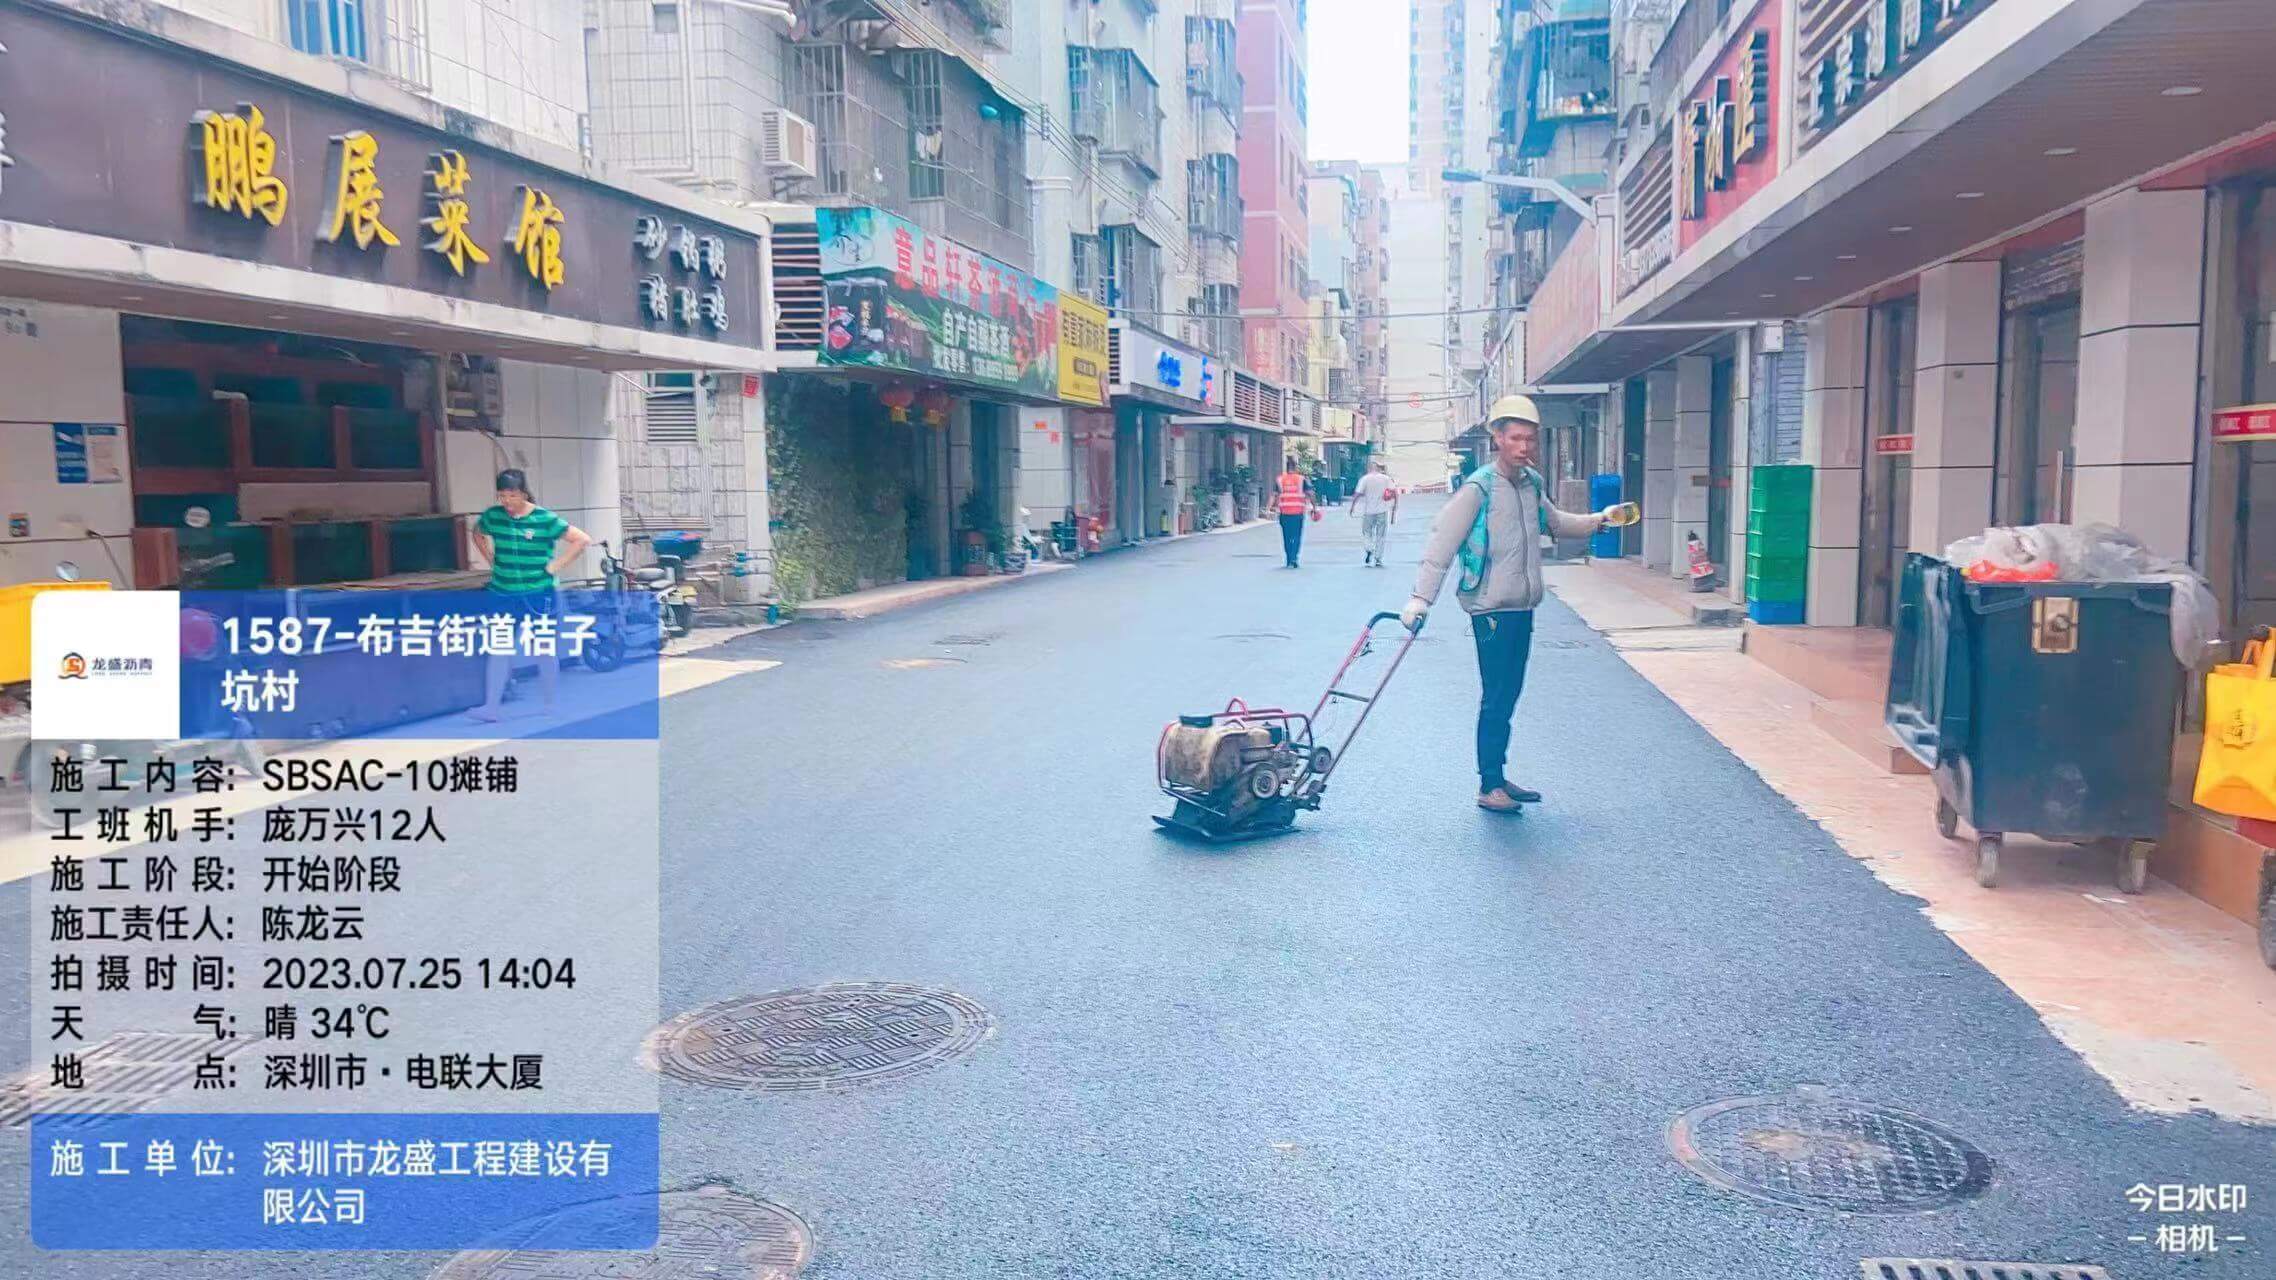 深圳市龙岗区布吉街道城中村沥青路面提升改造工程